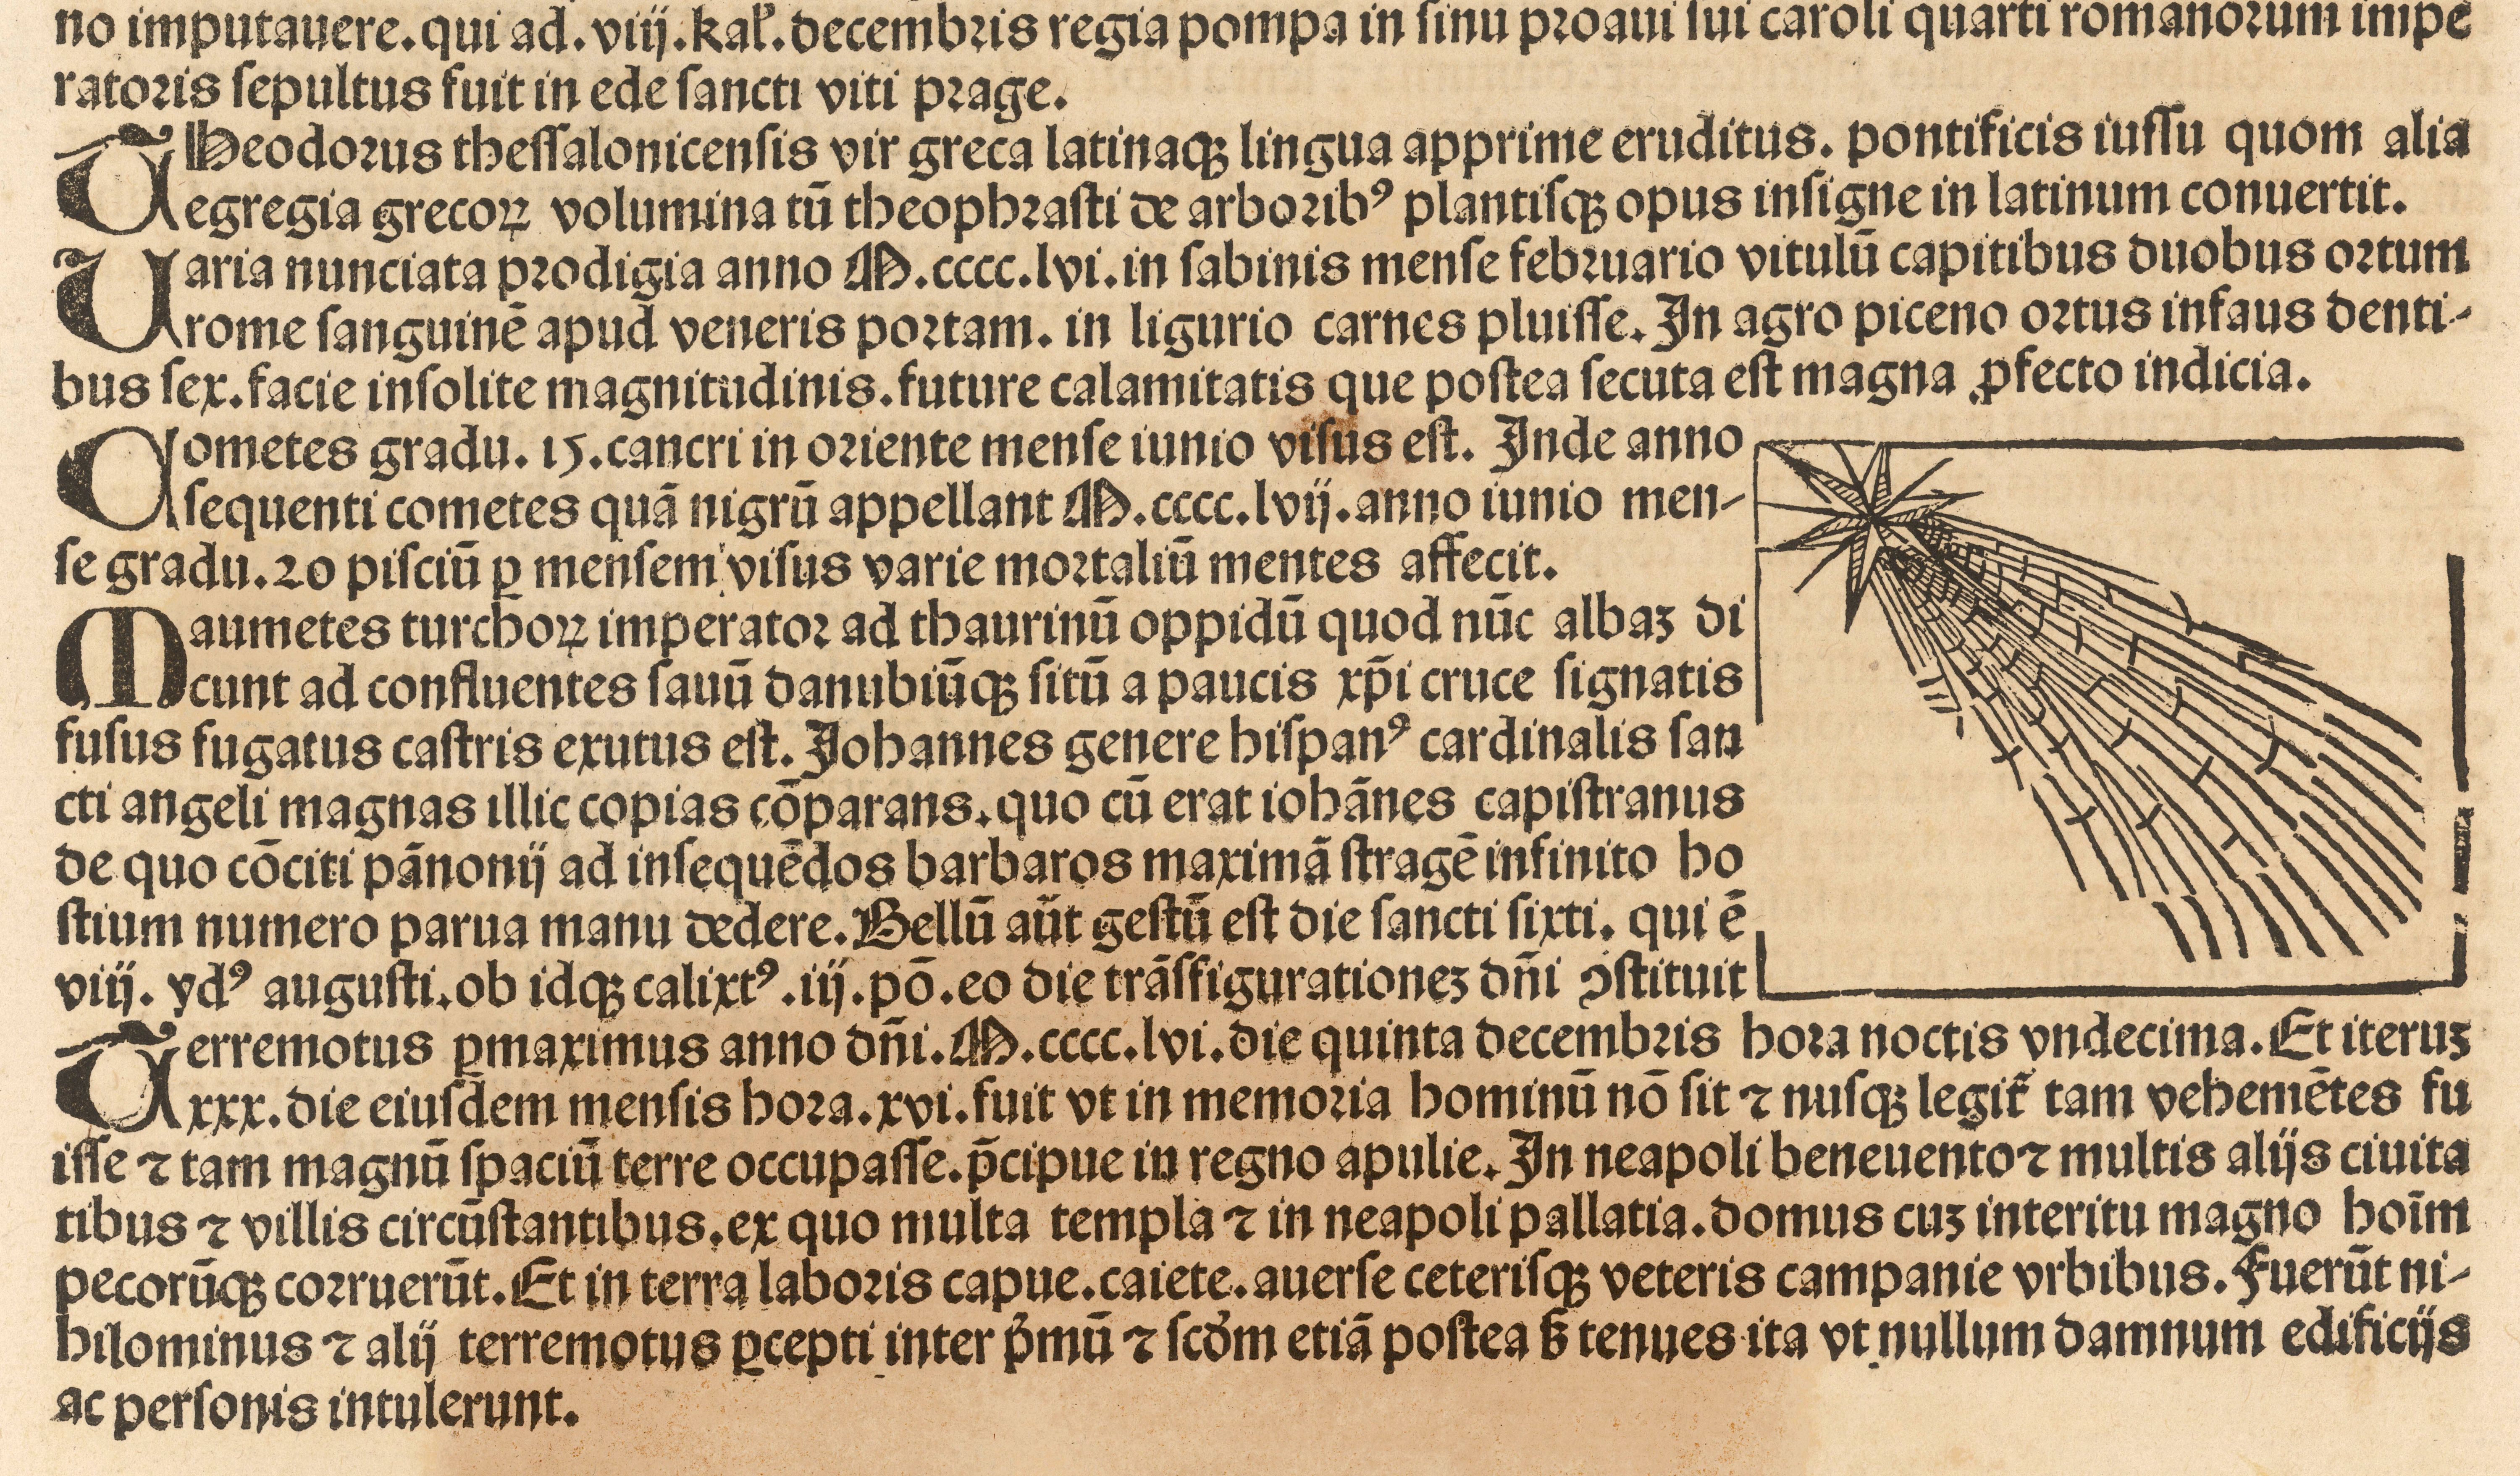 Als der Halleysche Komet 1546/47 auftauchte, war das für die Menschen seiner Zeit kein gutes Zeichen